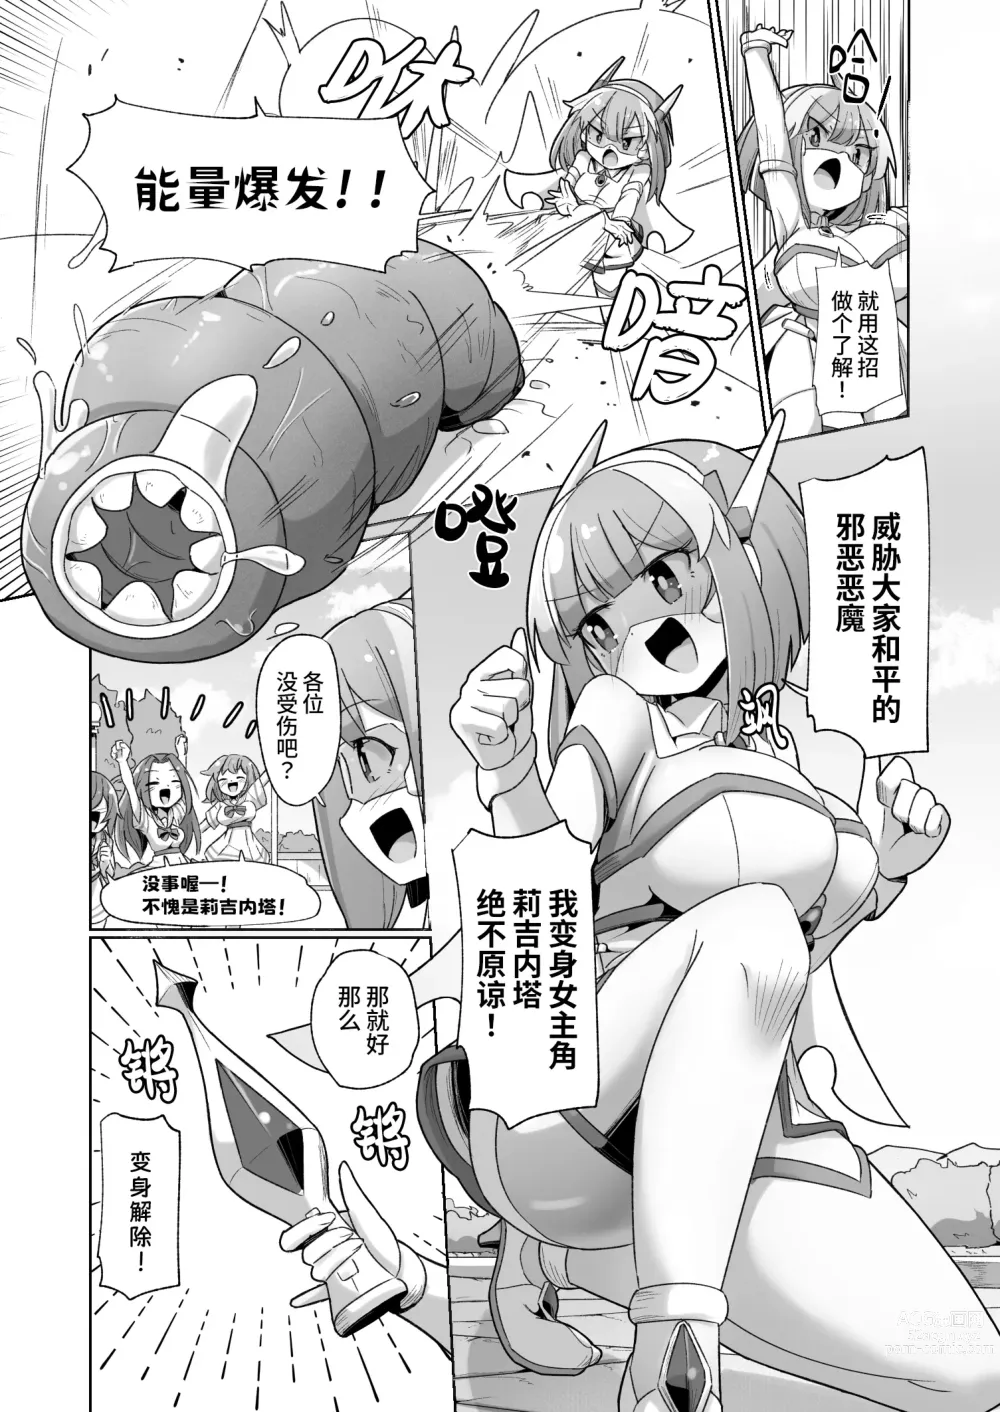 Page 2 of doujinshi 被本该守护的同伴侵犯的这种感觉怎么样啊(笑)??